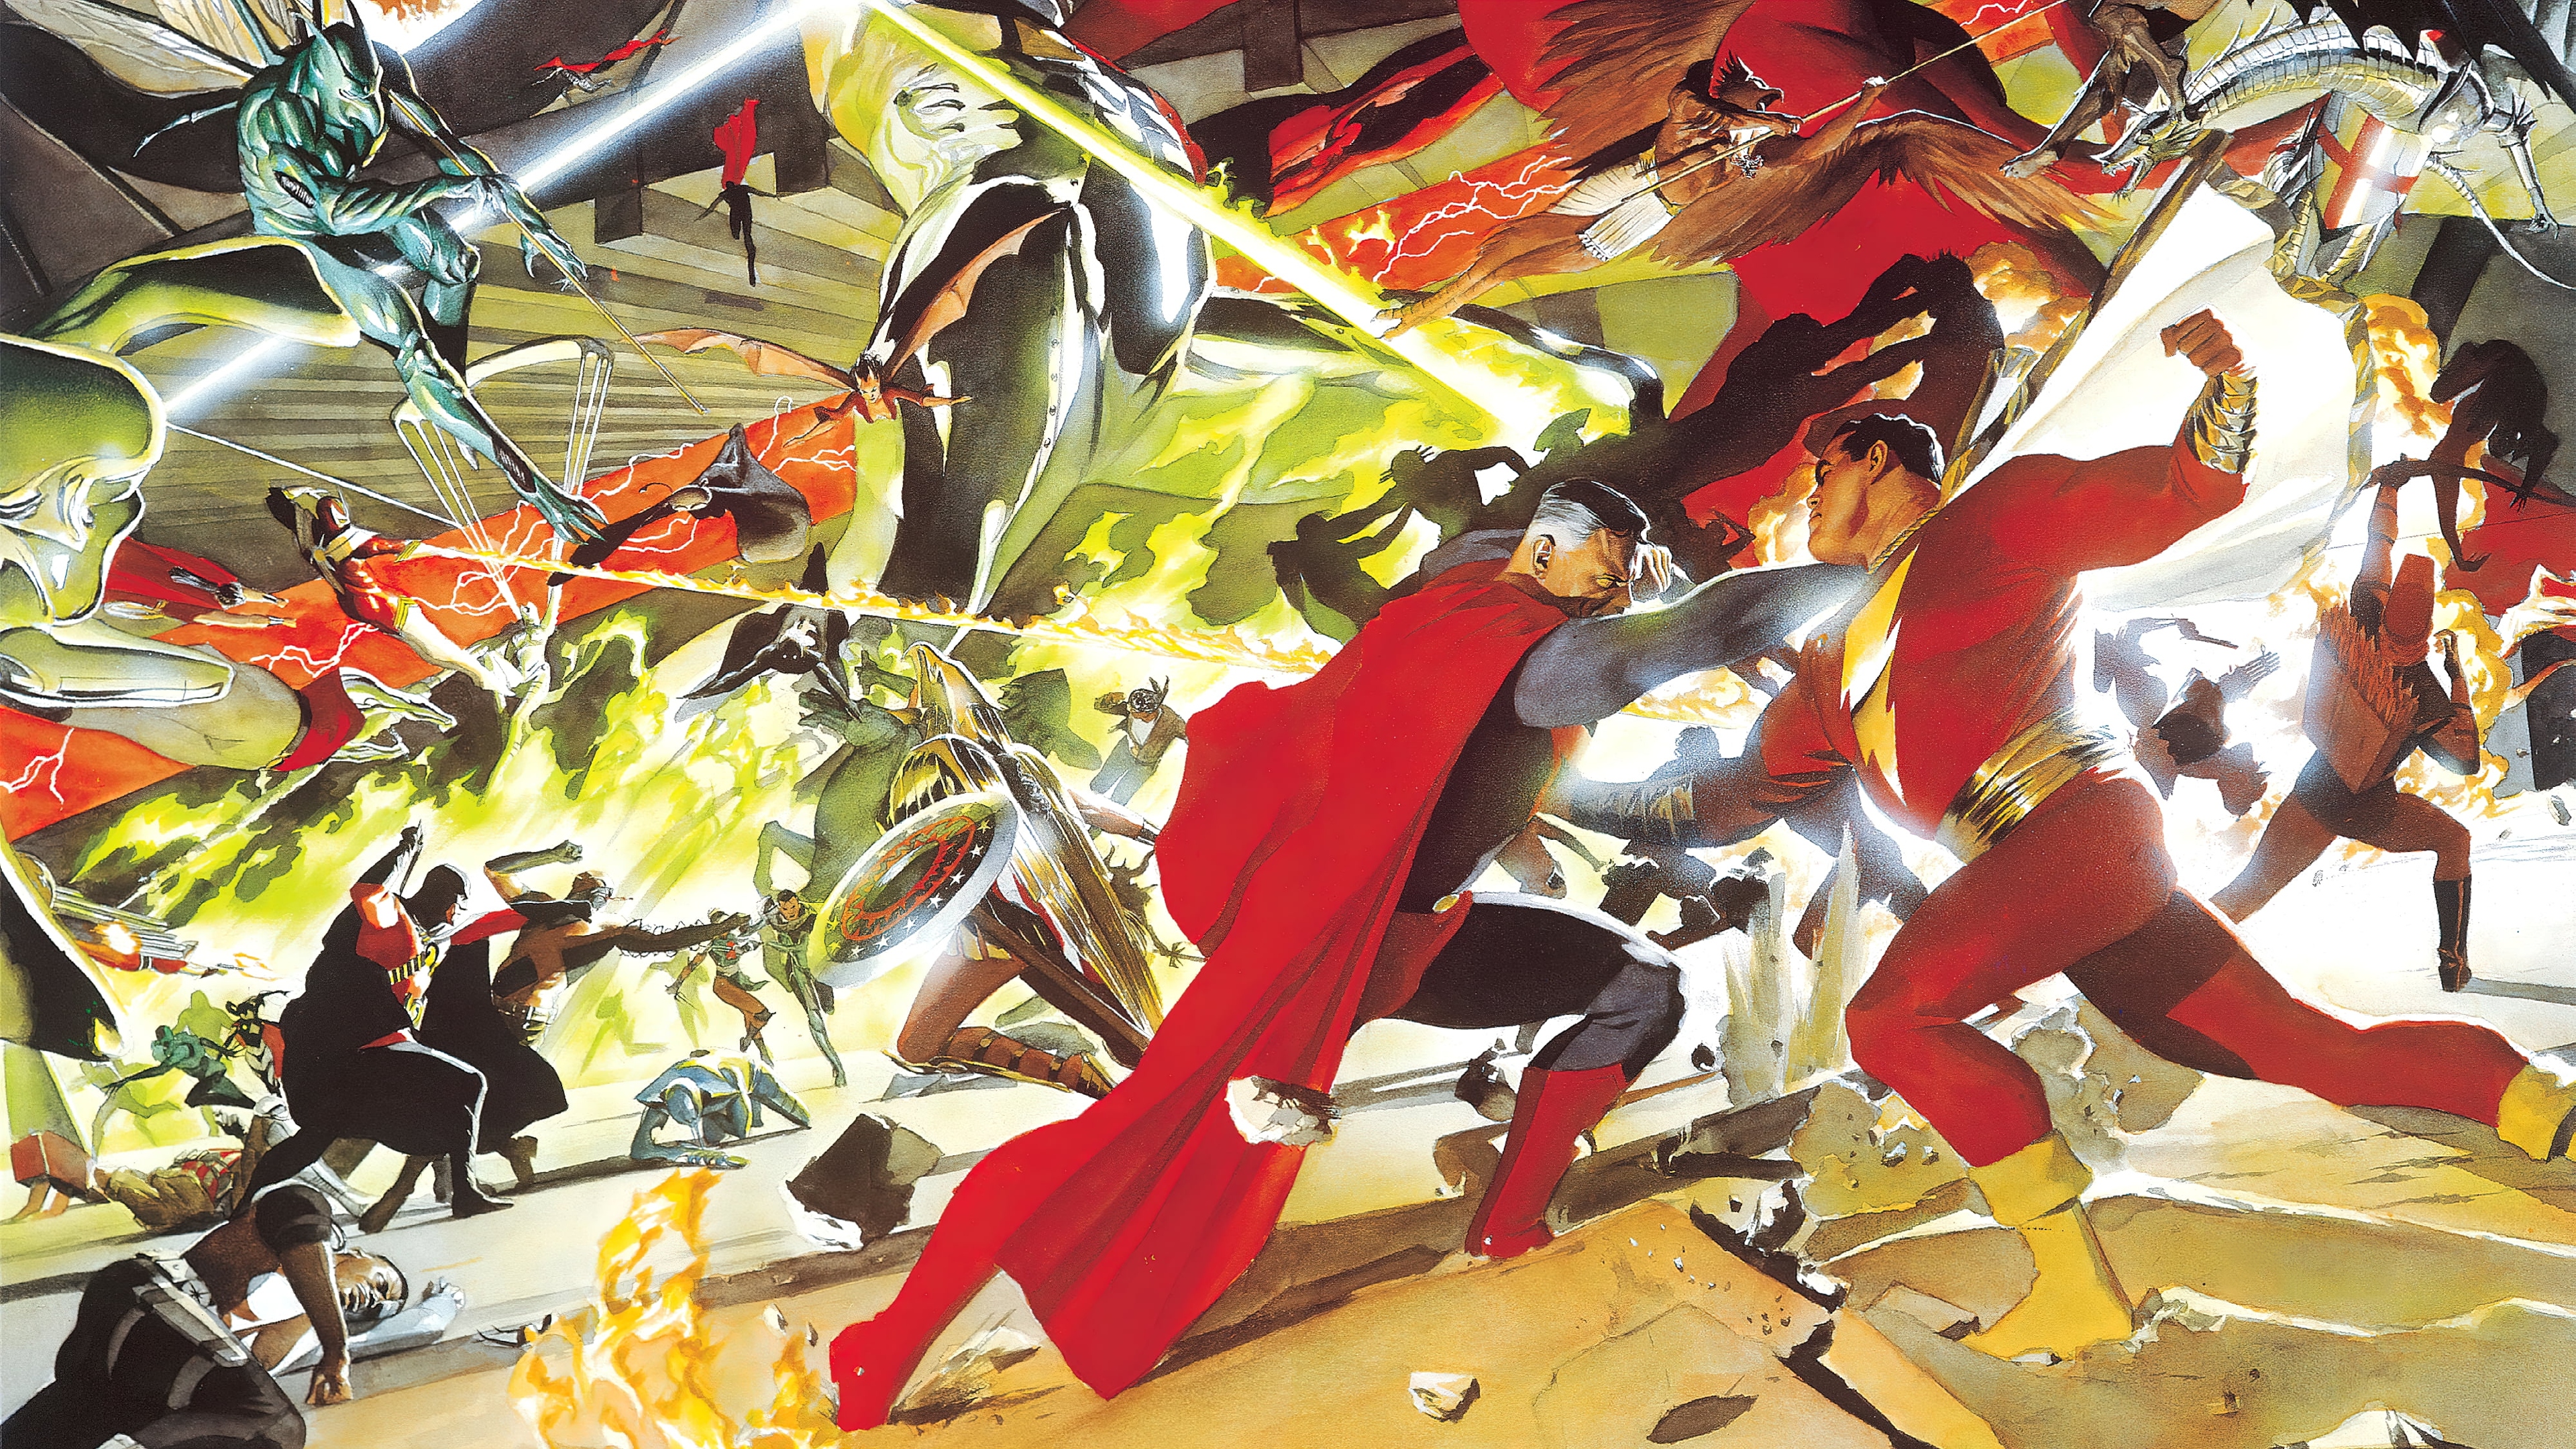 General 3840x2160 comics comix comic art superhero villains DC Comics Alex Ross Shazam Superman The Flash Hawkman Green Arrow artwork fighting digital art